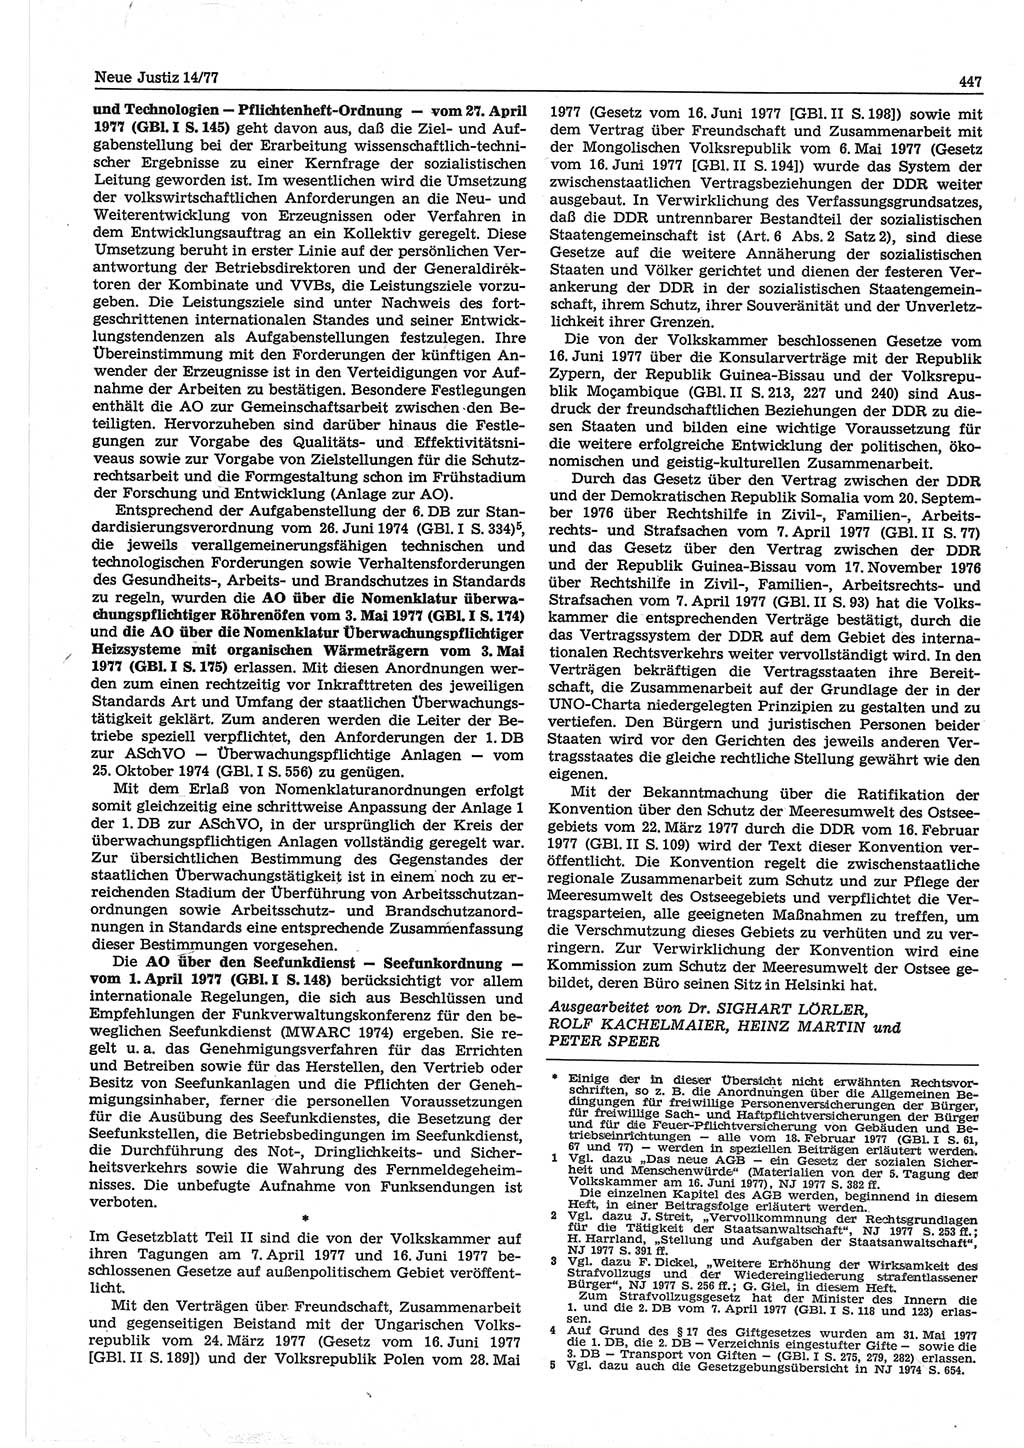 Neue Justiz (NJ), Zeitschrift für Recht und Rechtswissenschaft-Zeitschrift, sozialistisches Recht und Gesetzlichkeit, 31. Jahrgang 1977, Seite 447 (NJ DDR 1977, S. 447)